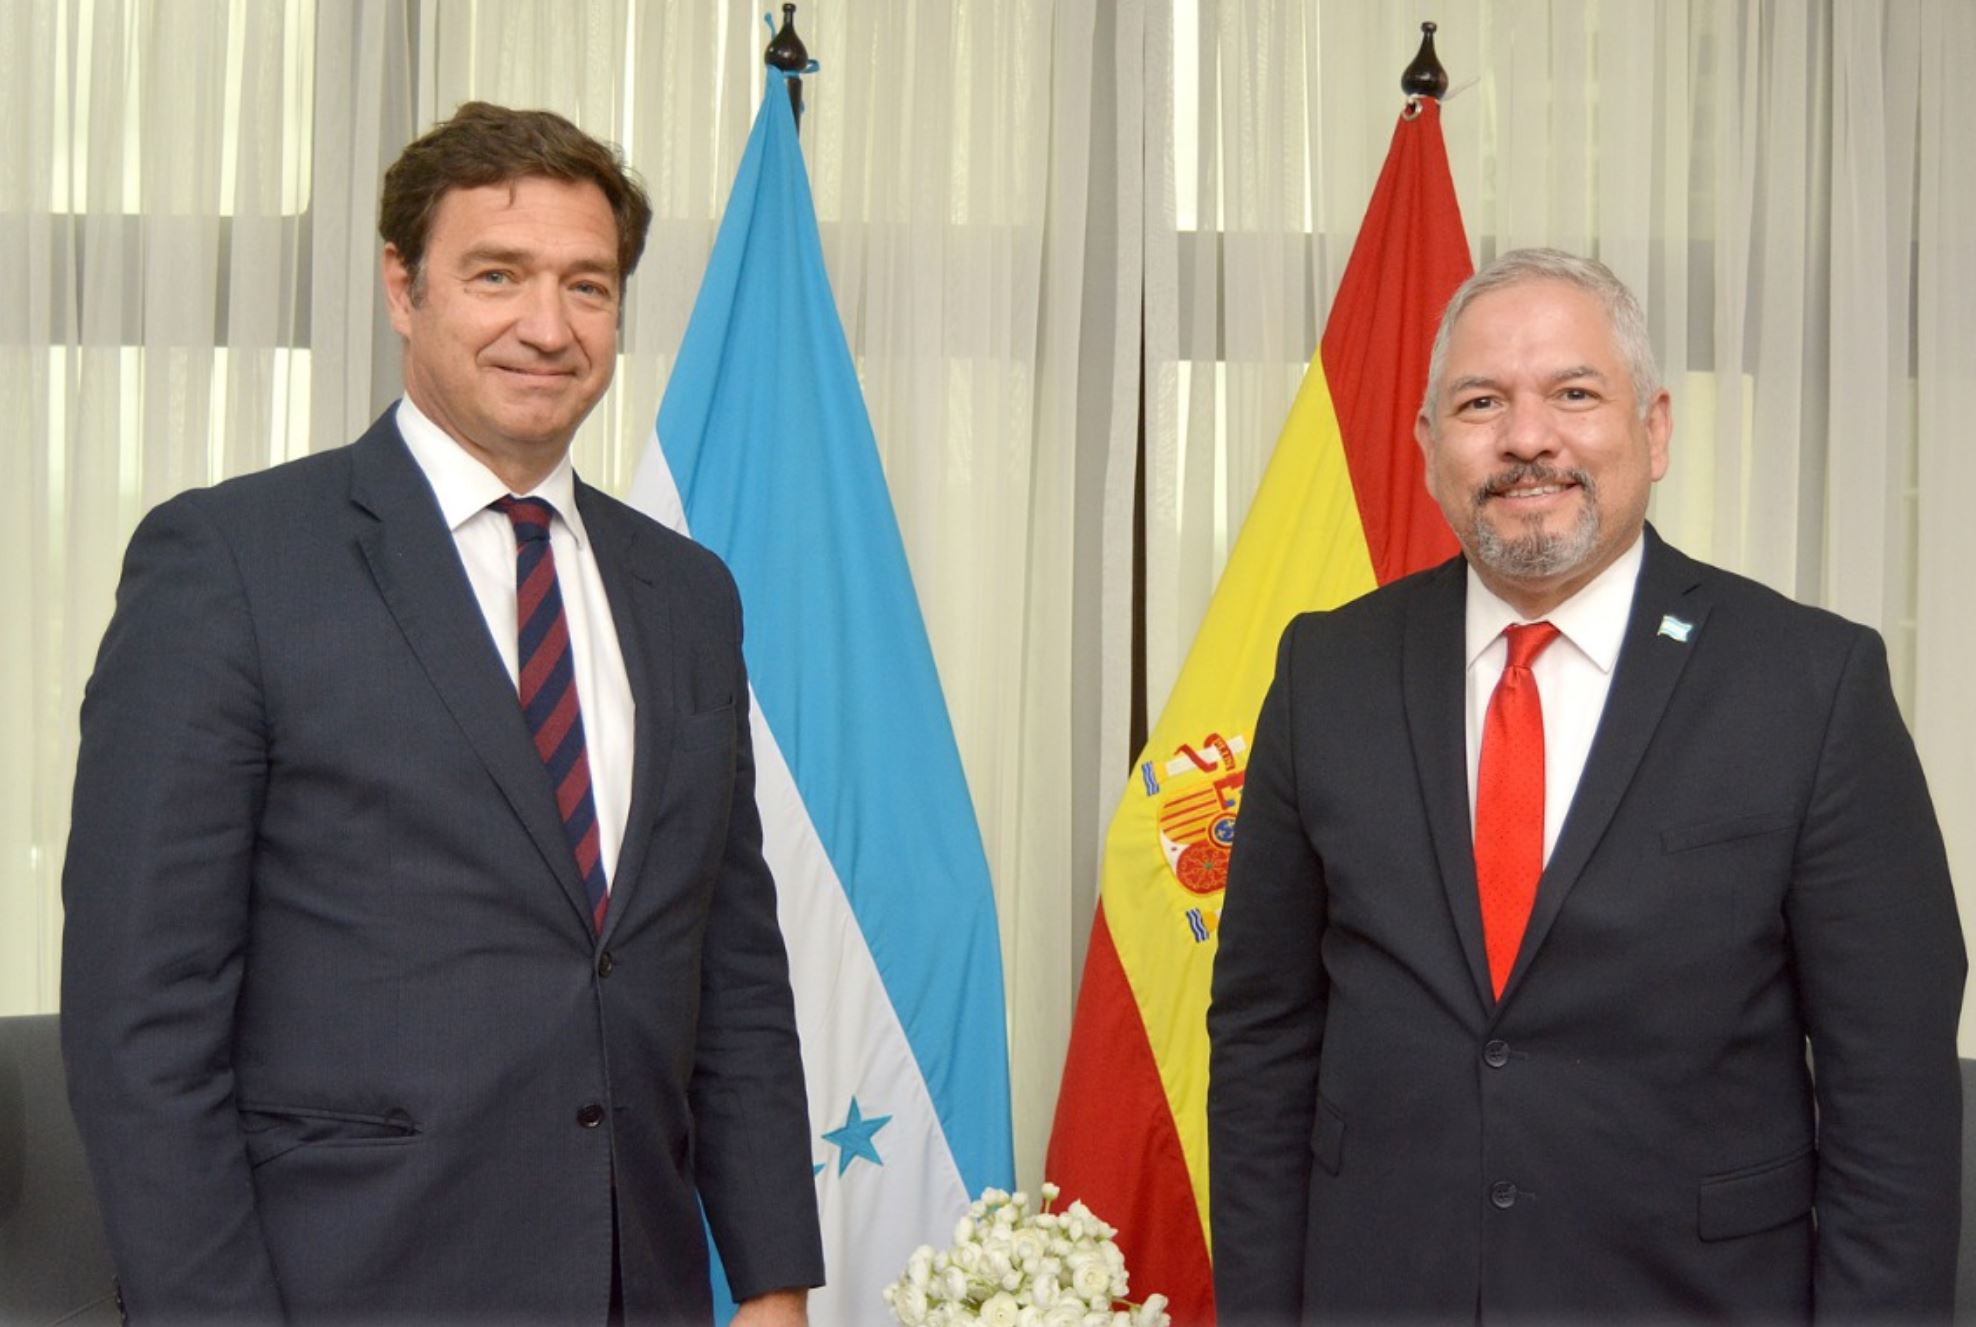 Diego Nuño García nuevo embajador de España en Honduras